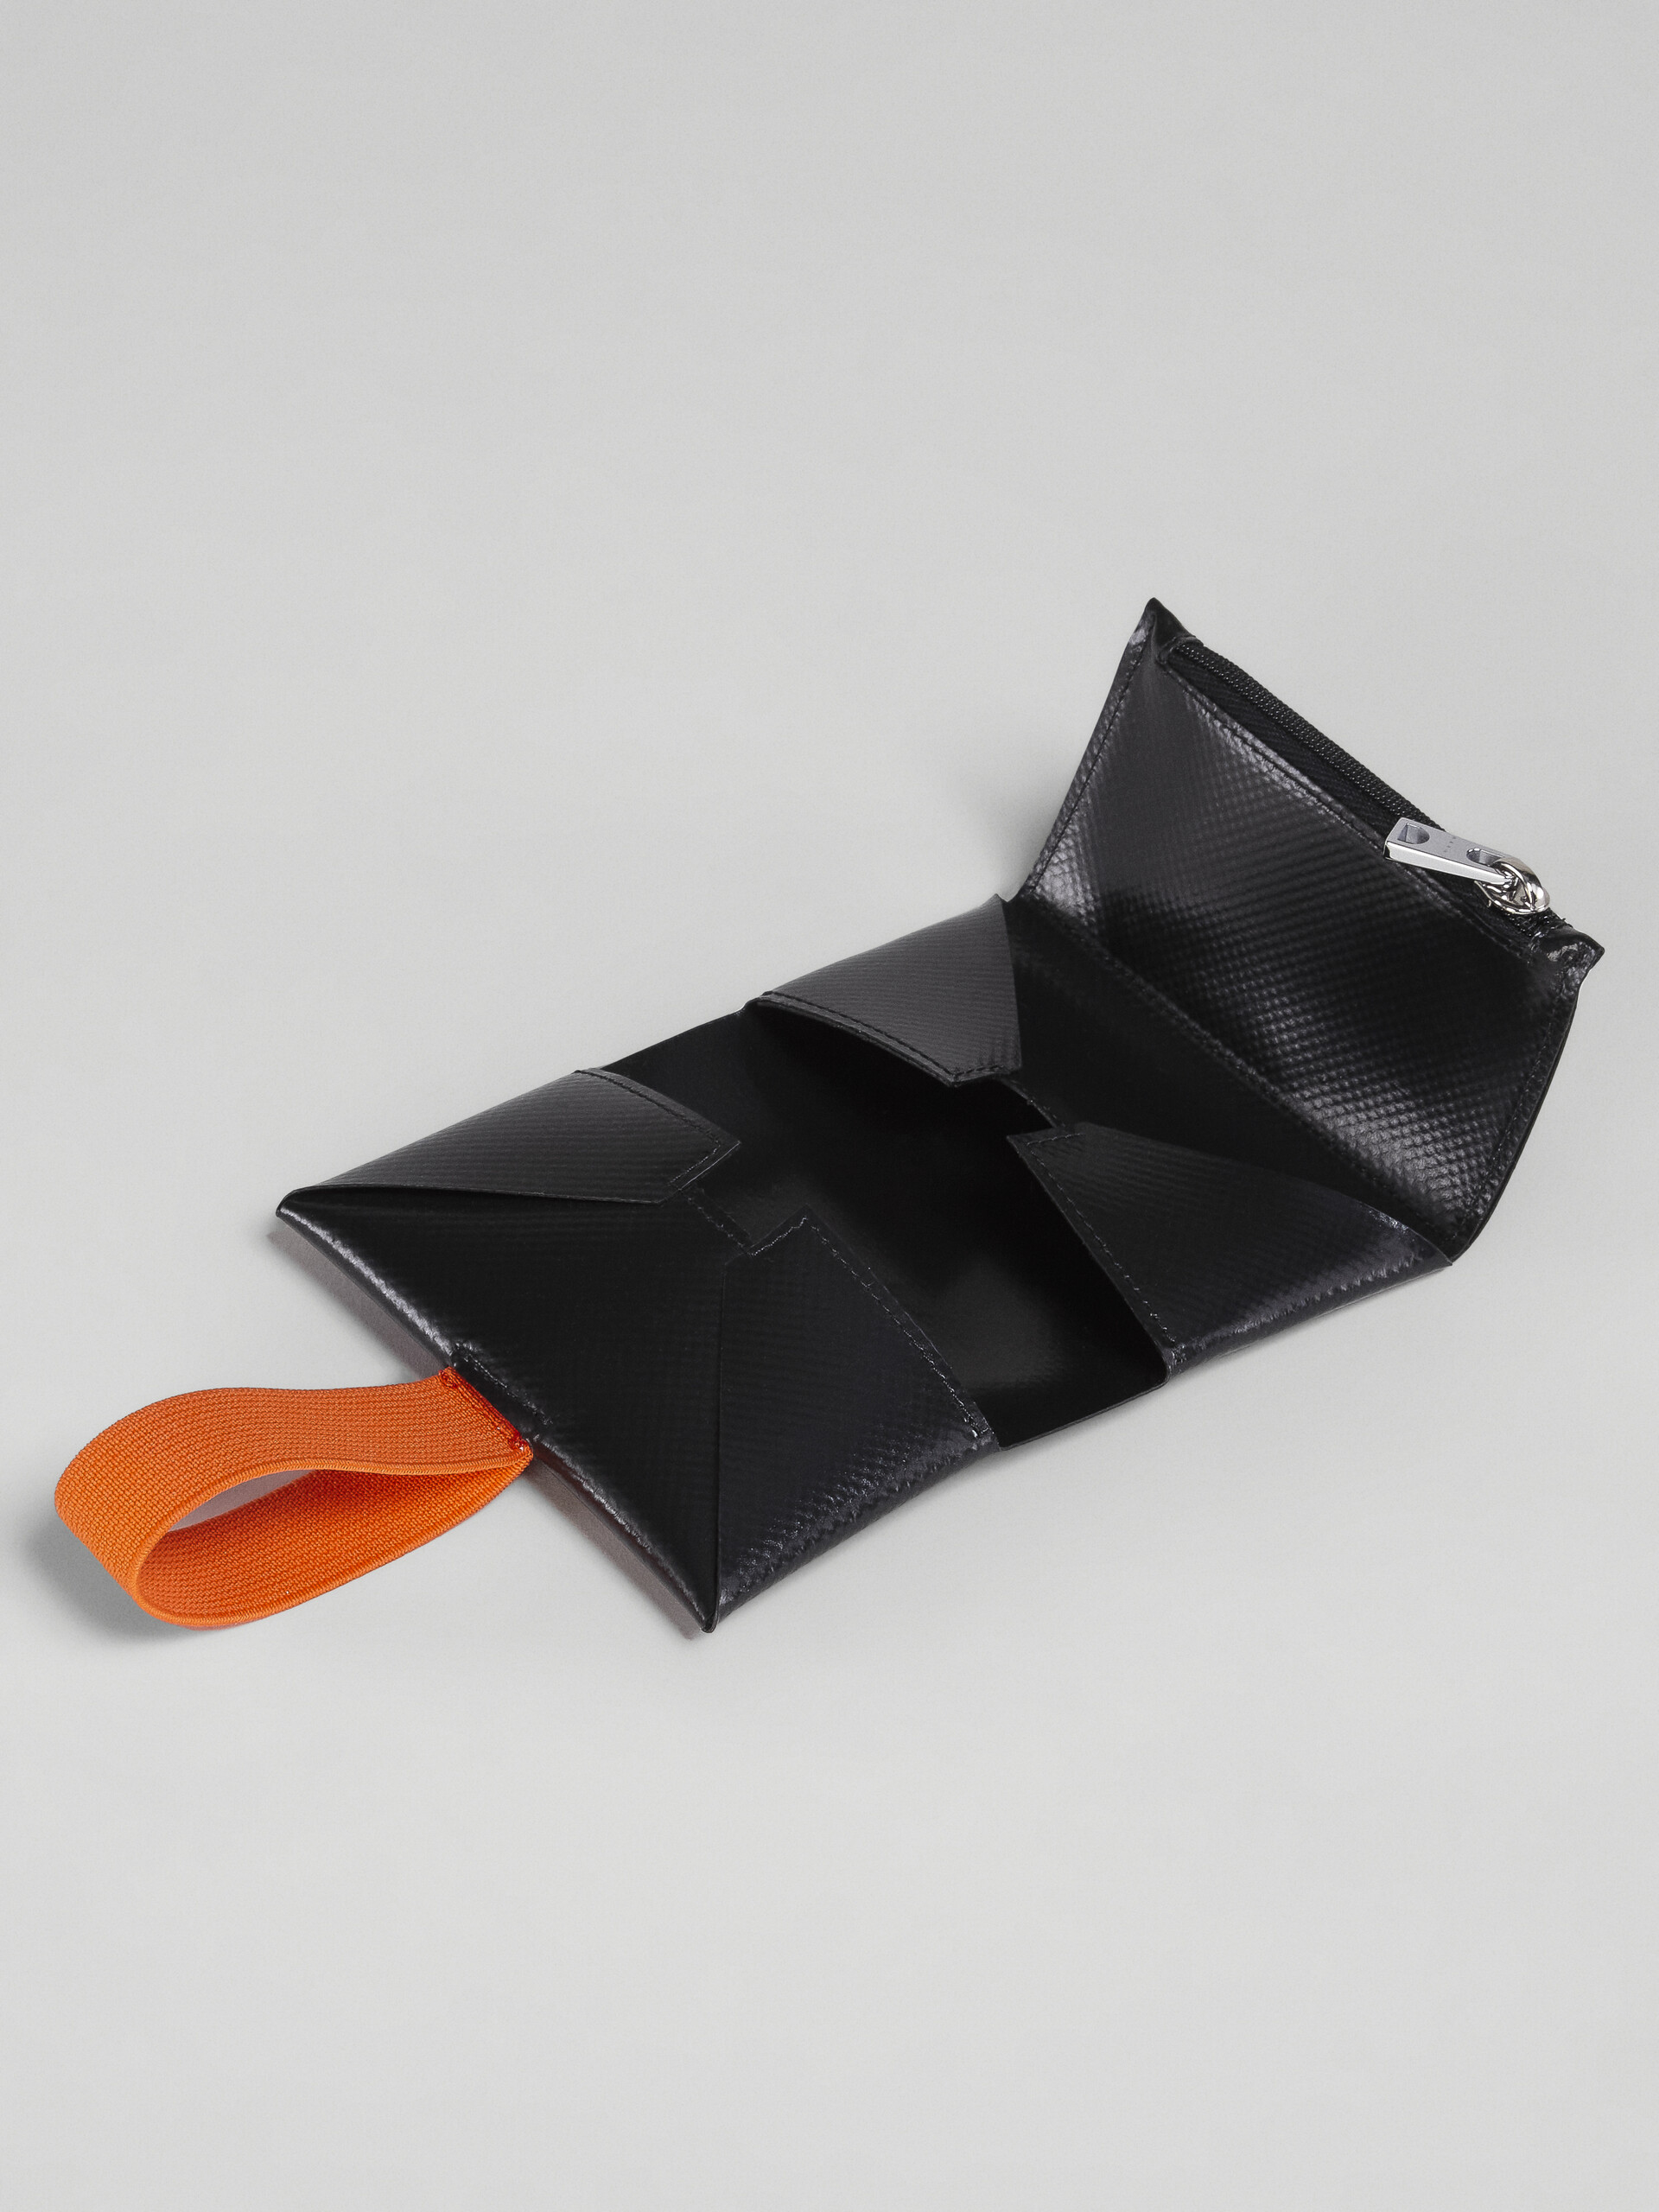 Portefeuille origami orange et noir - Portefeuilles - Image 5